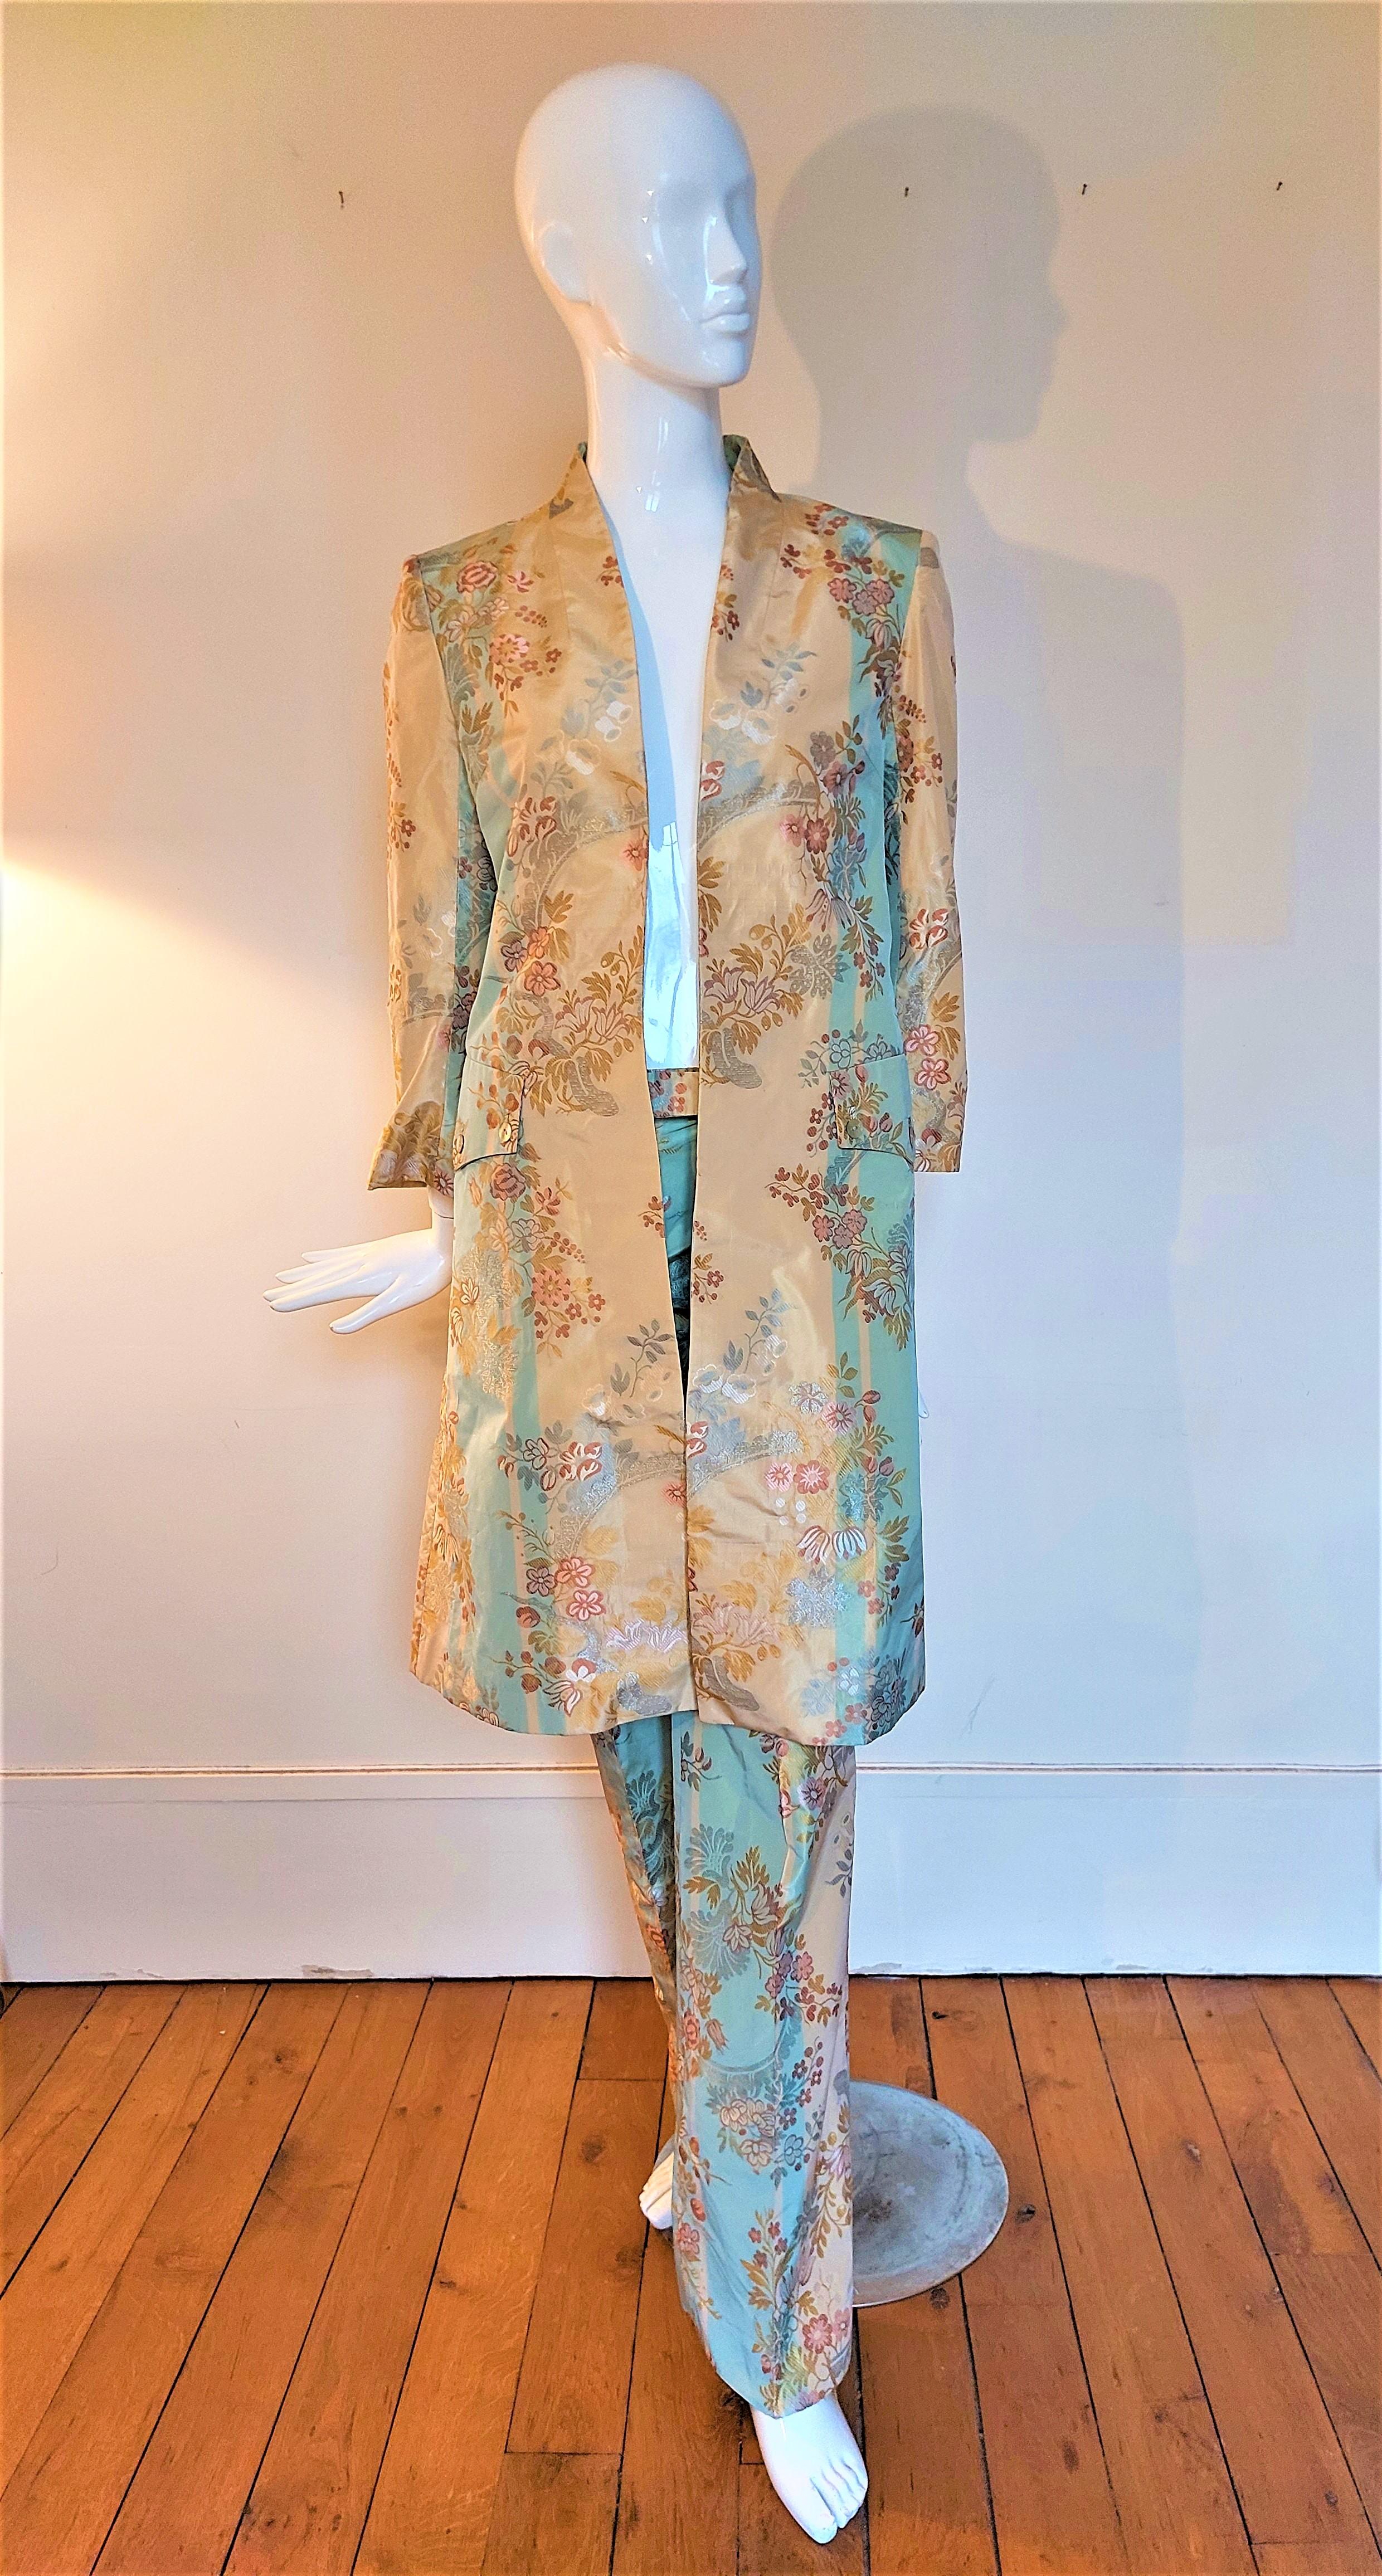 2000S ALEXANDER MCQUEEN Silk Brocade Frock Coat Jacket Trousers Pants Suit Set From The Shipwreck Collection Irere.

Excellent état.
Pièce de musée.
Convient pour XS/S.
Mesures :
Veste :
D'une épaule à l'autre : 45 cm - 17,7 pouces
D'aisselle à